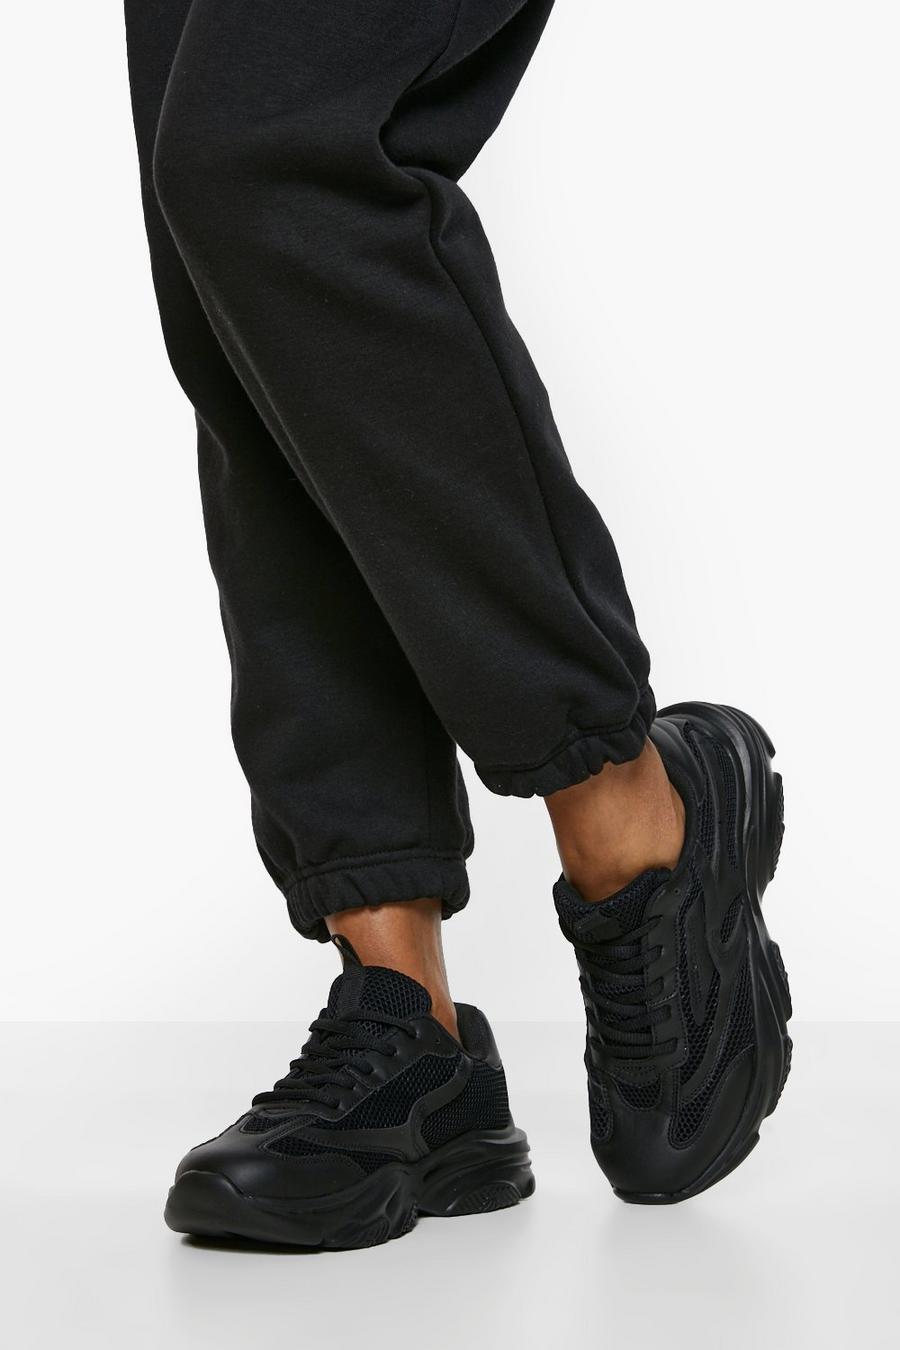 Scarpe da ginnastica a calzata ampia con pannelli in rete a contrasto e suola spessa, Black negro